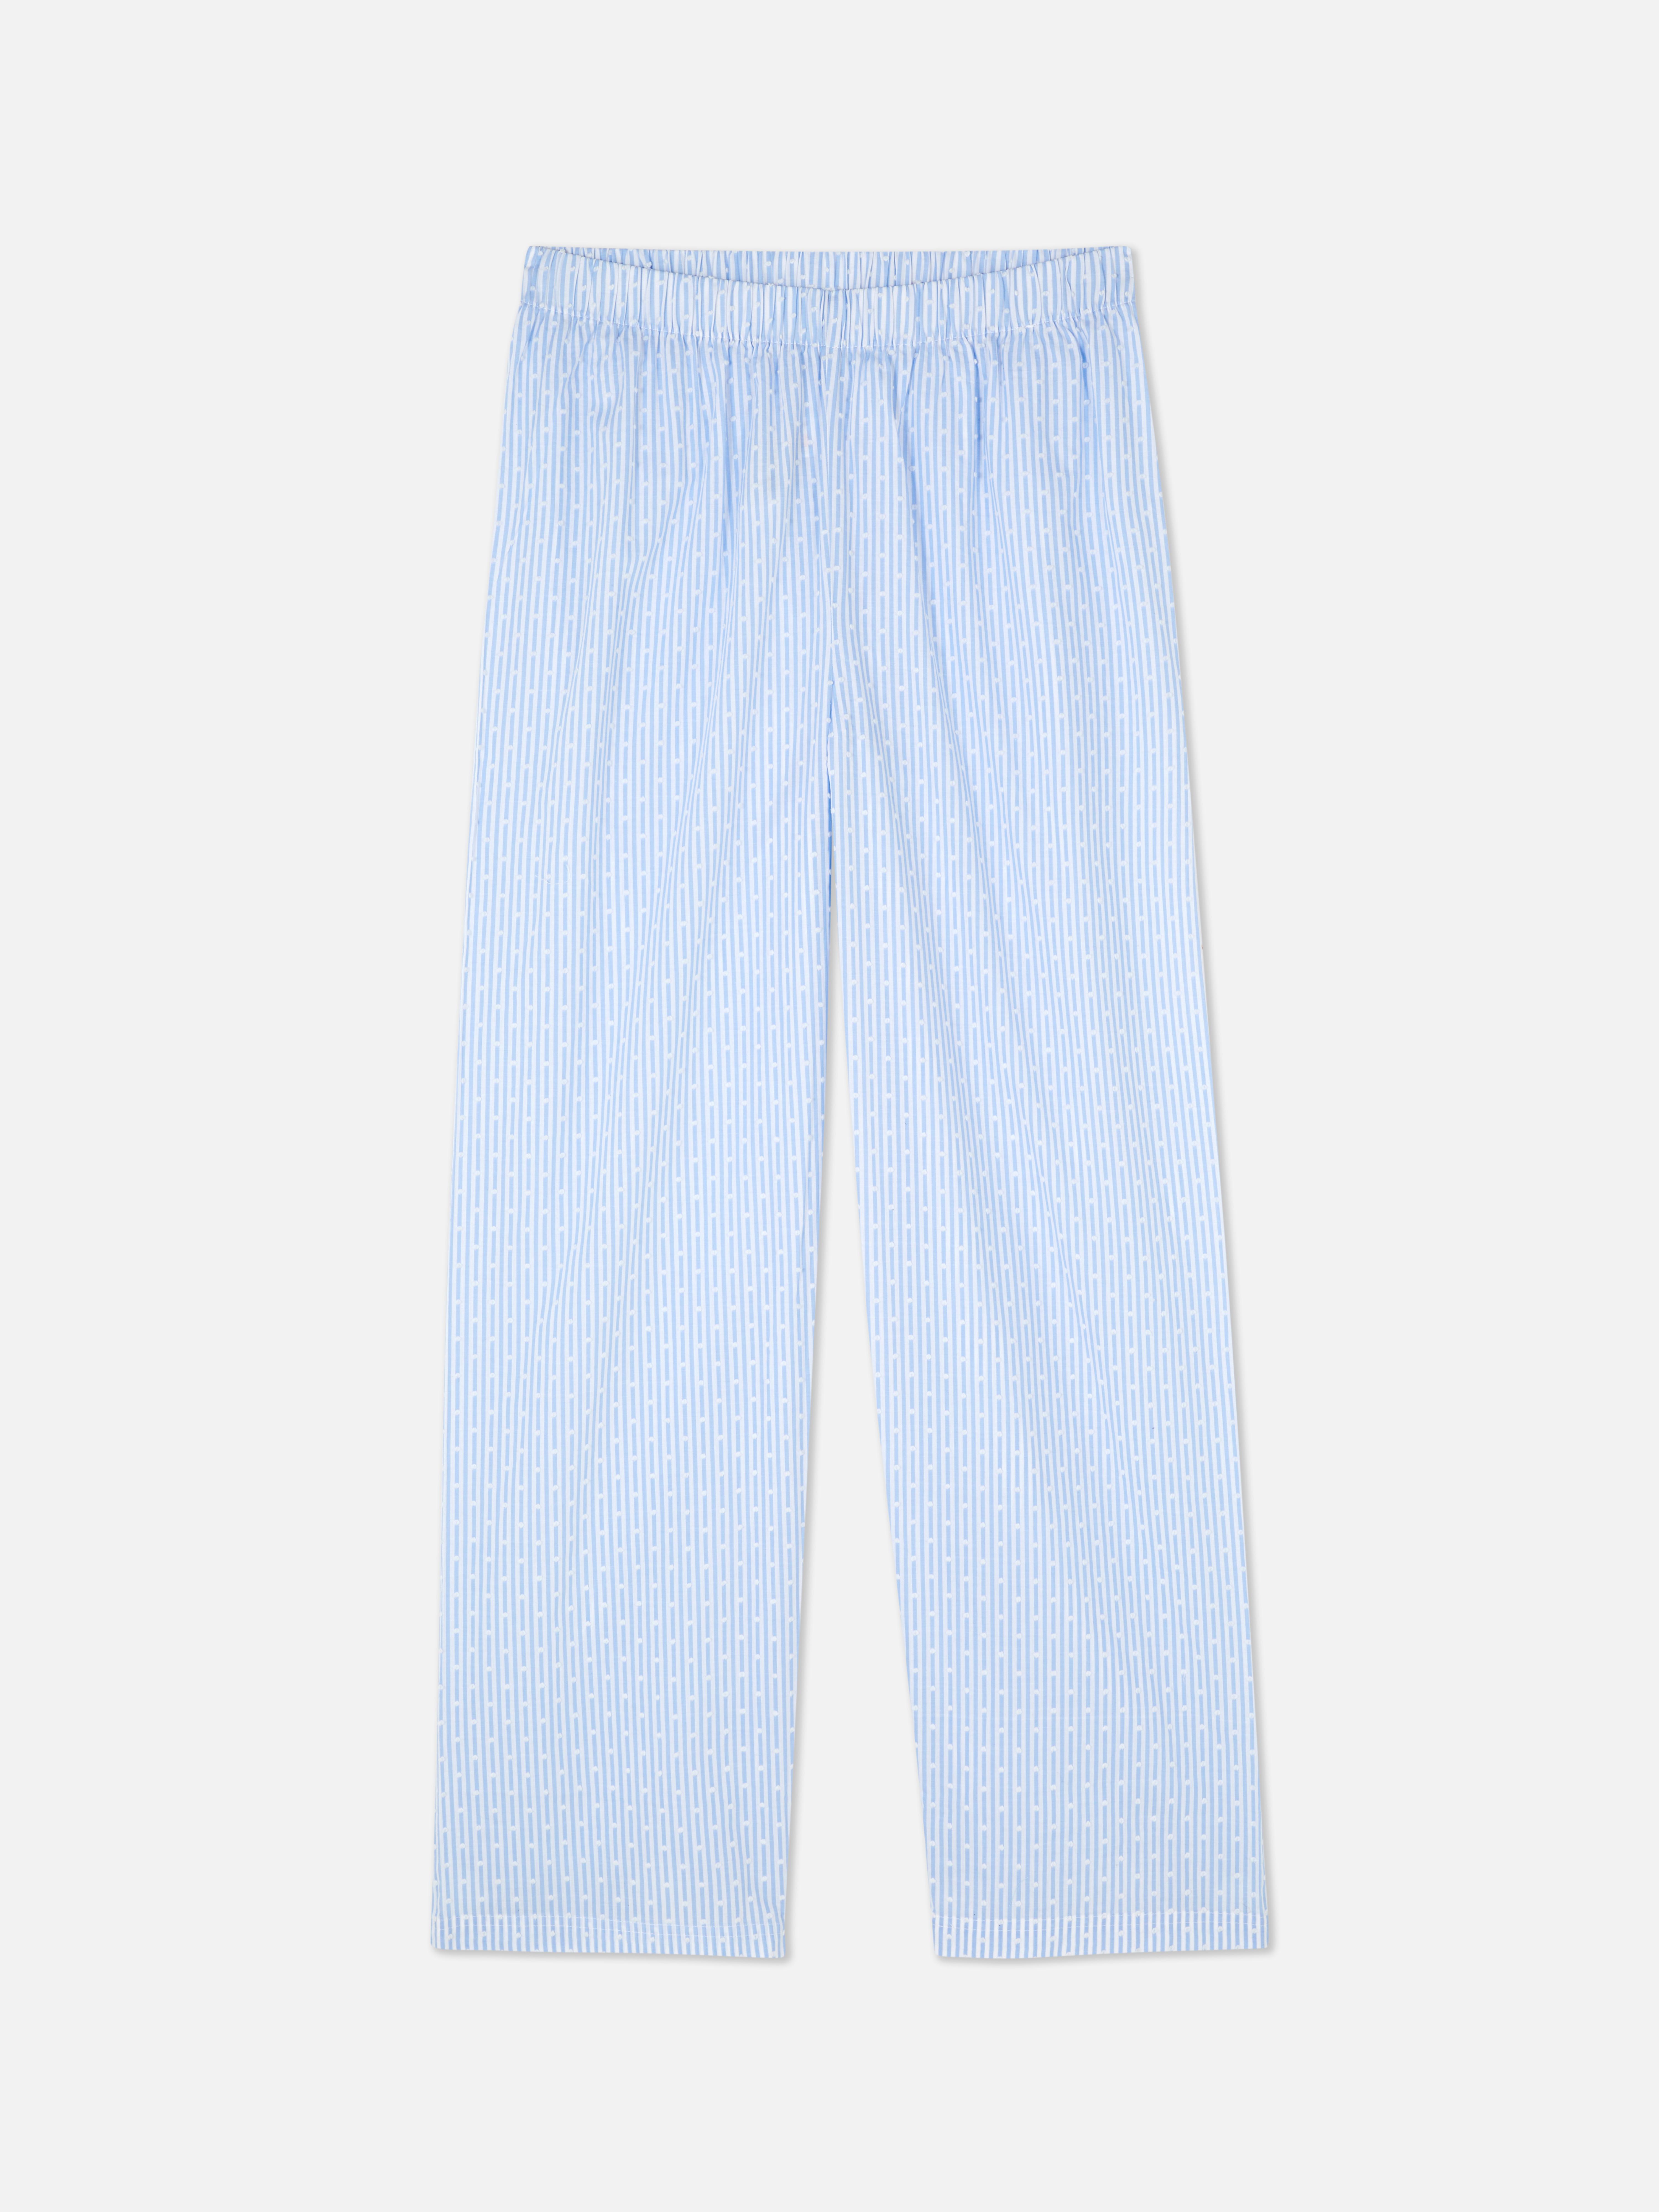 Calças pijama texturadas